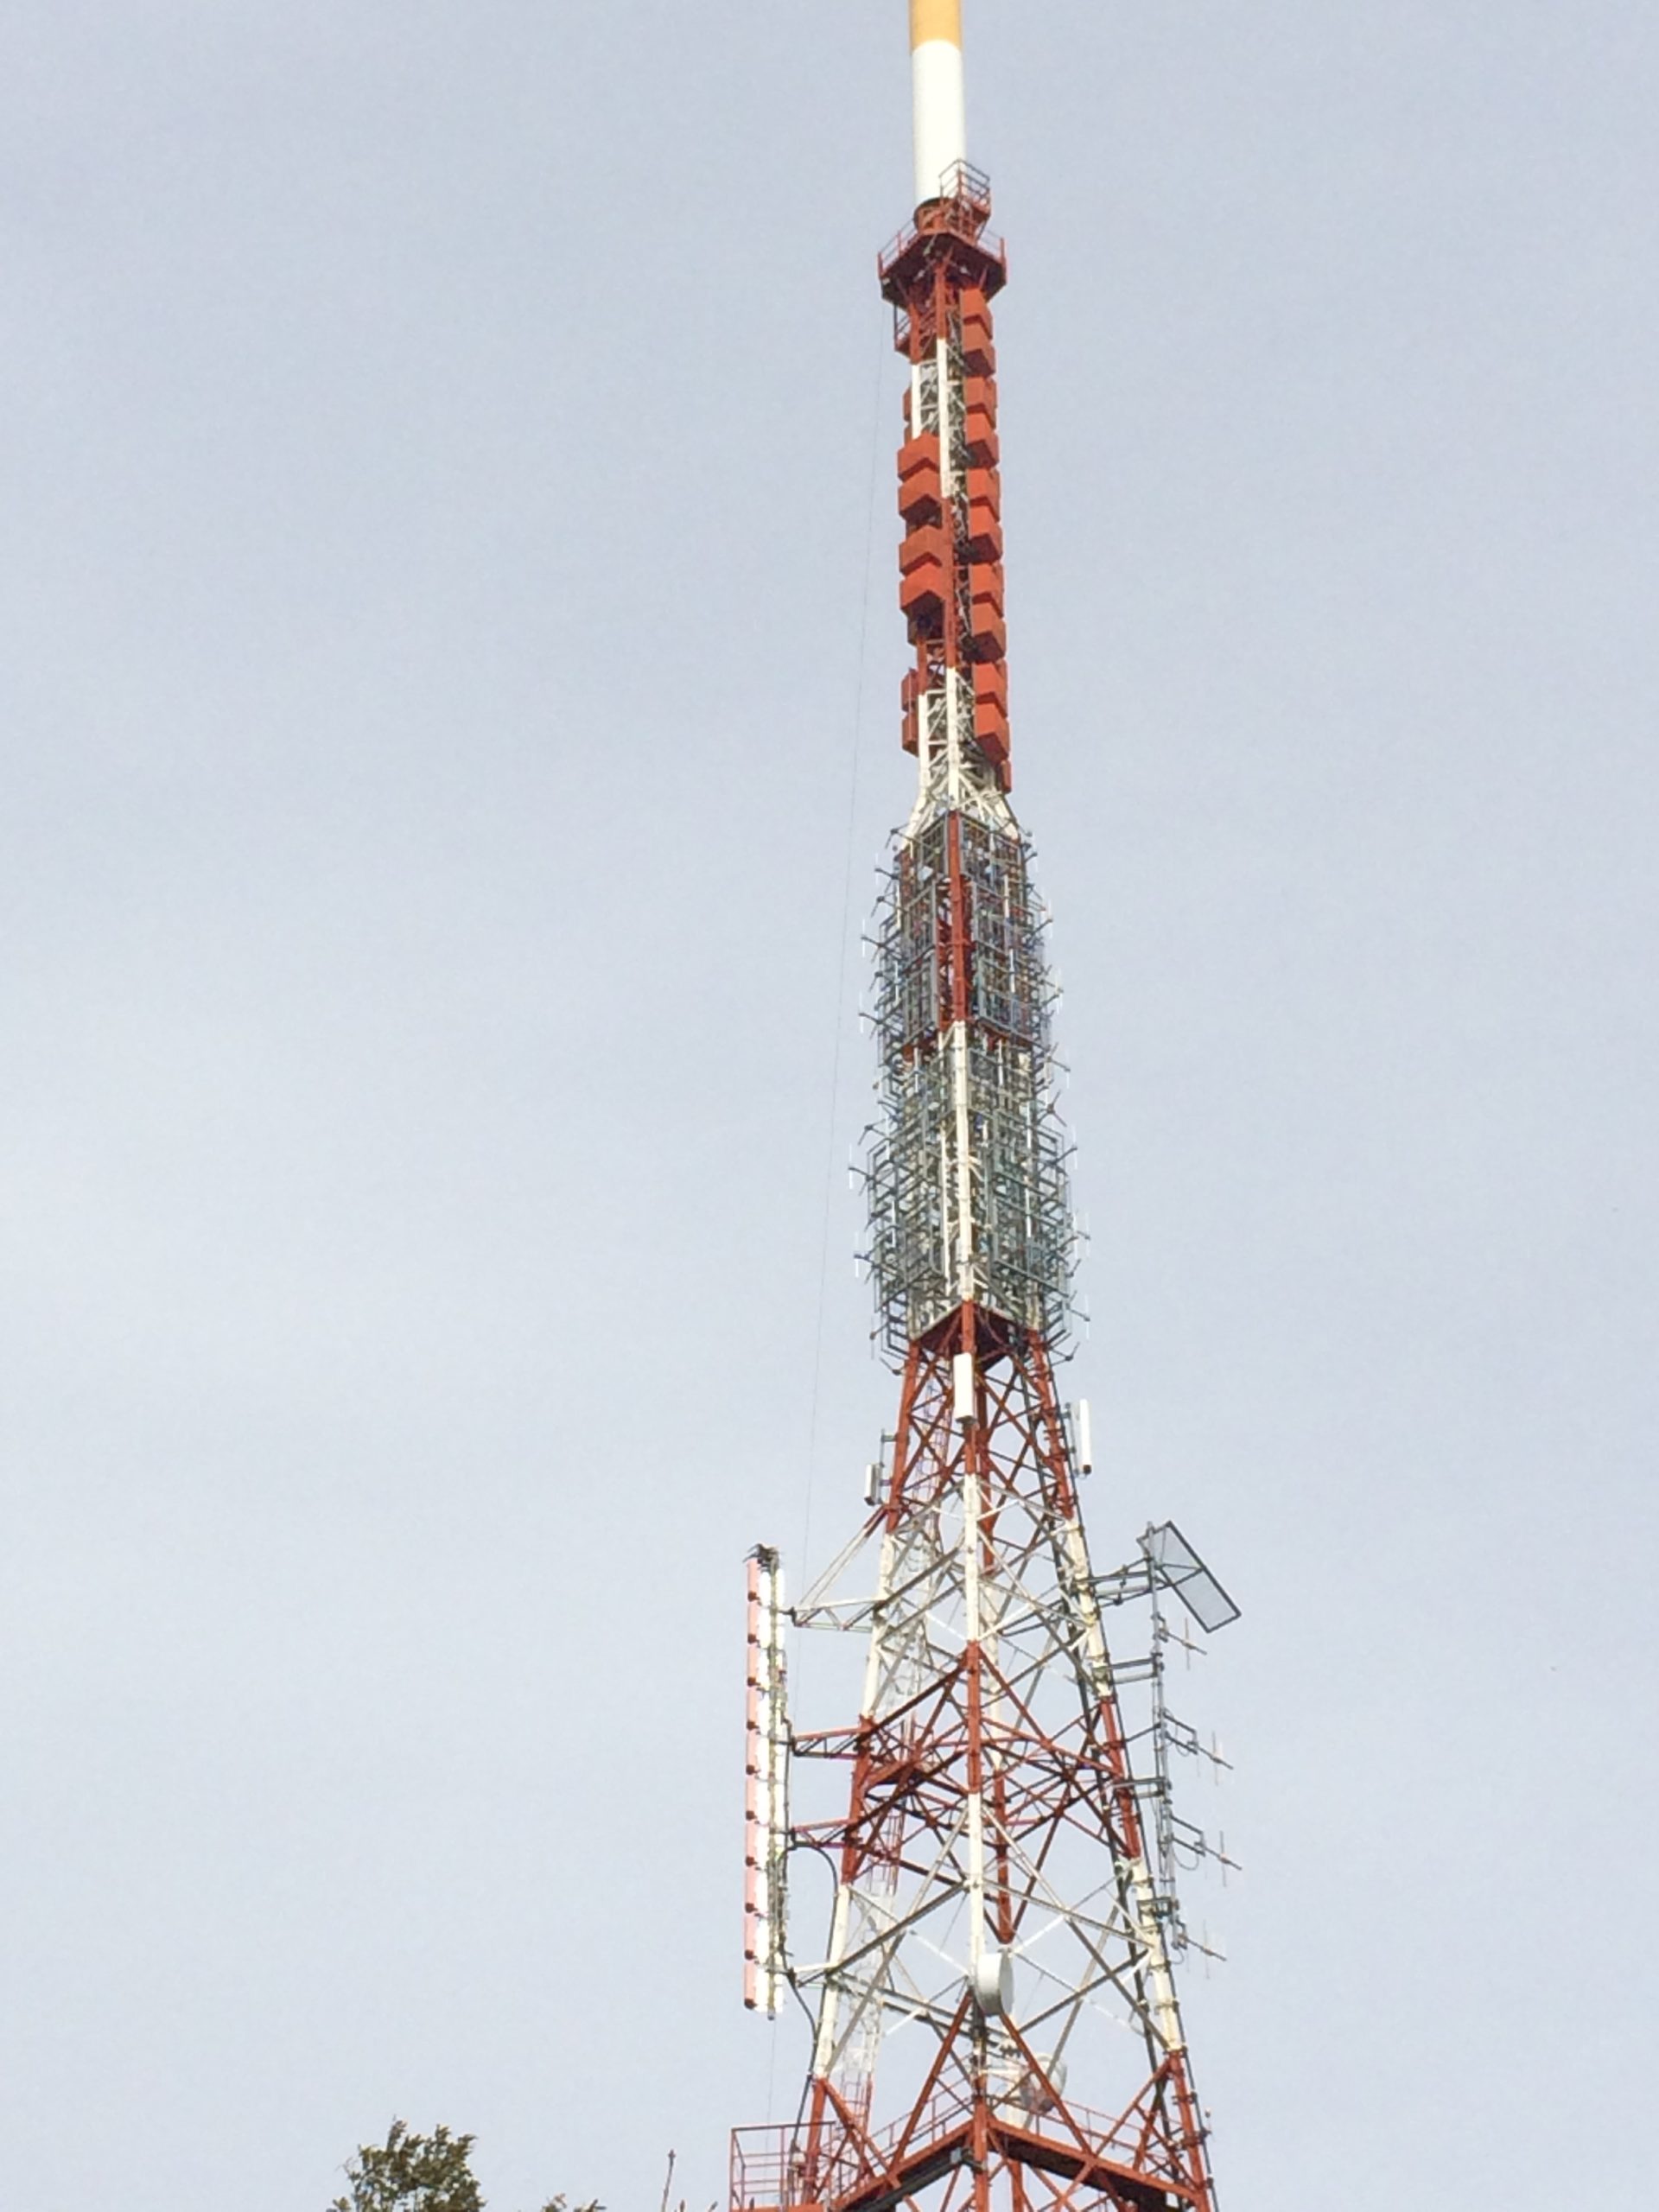 Monte Sambuco station FM antenna system